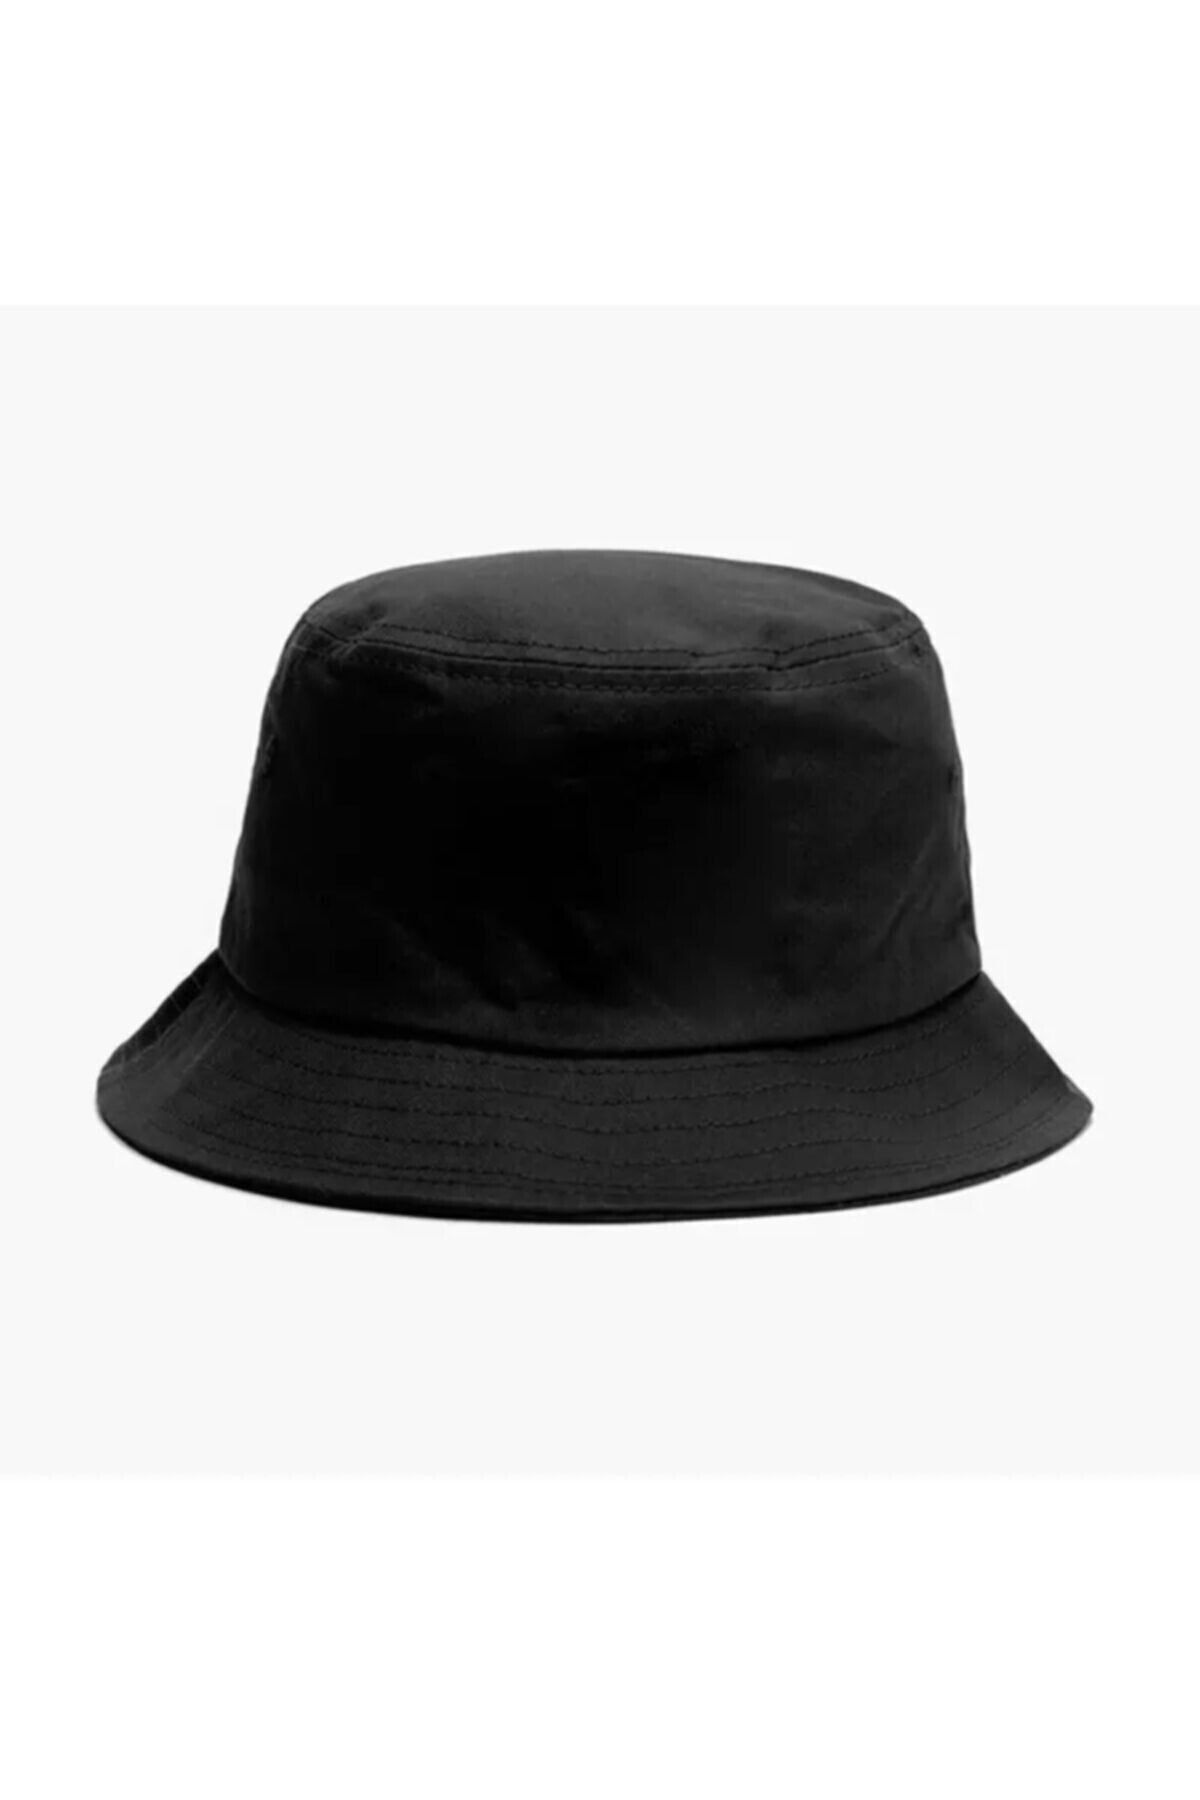 Belifanti Collection Düz Siyah Kova Şapka Balıkçı Şapka Bucket Hat